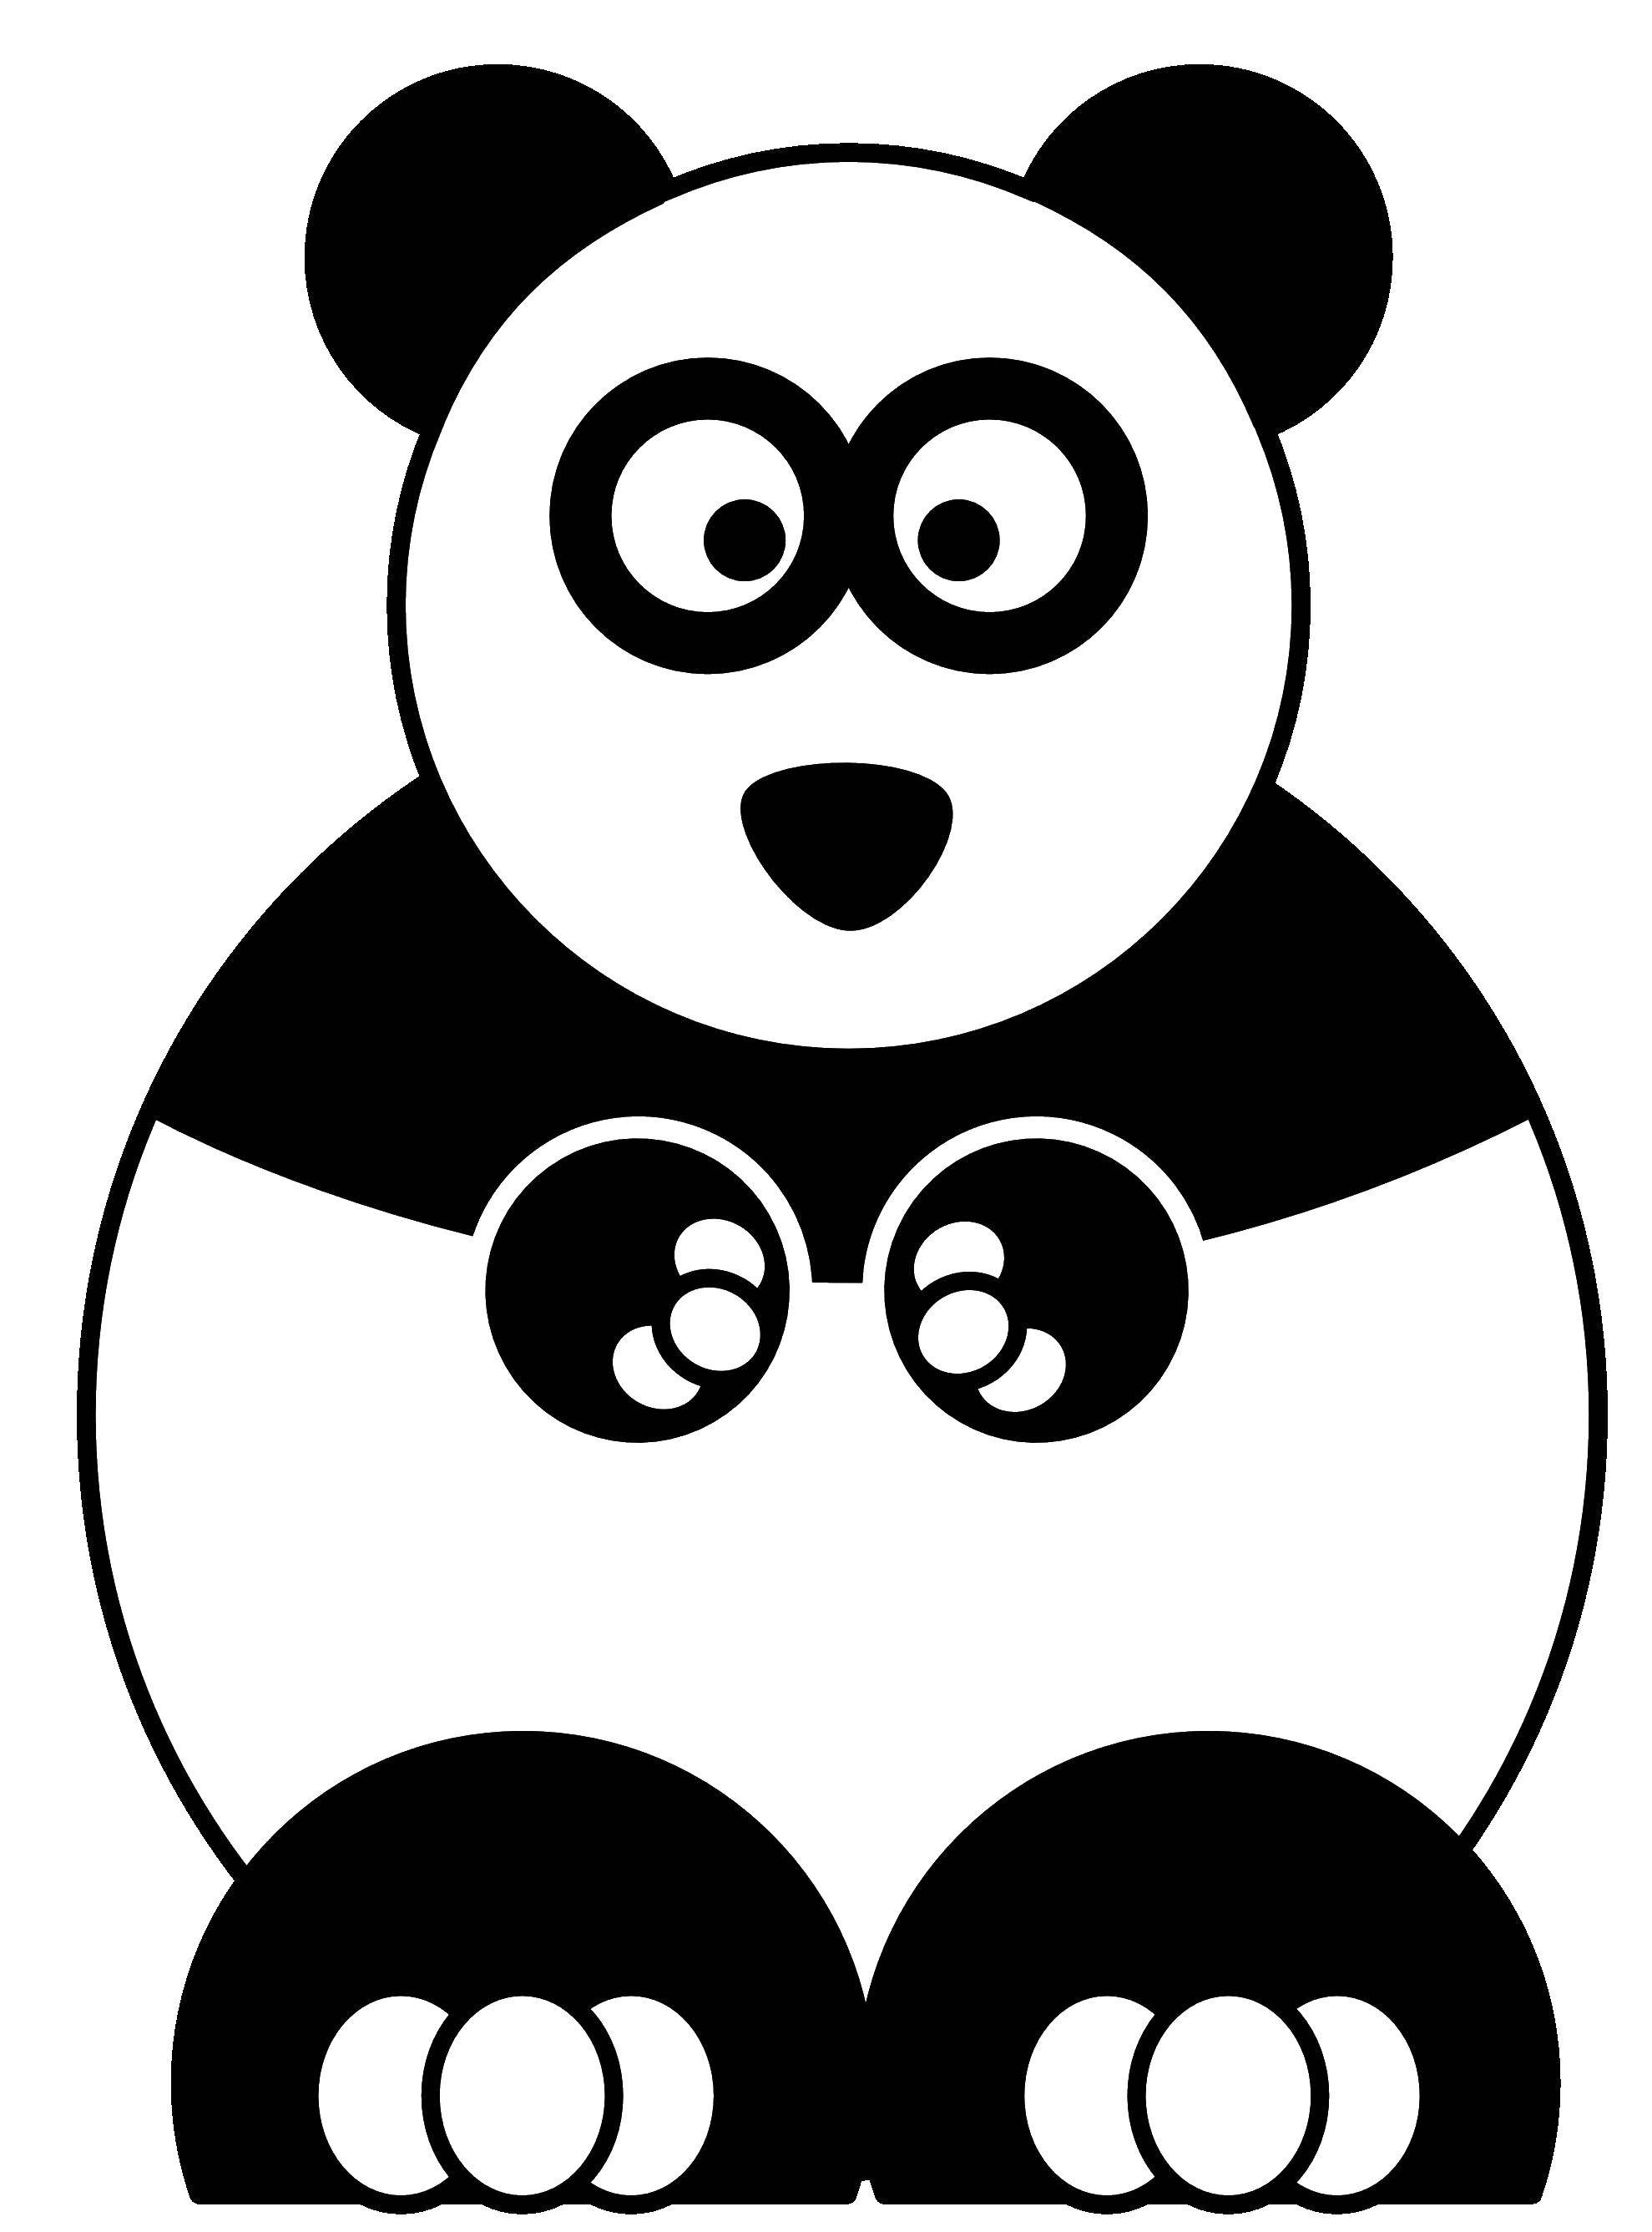 Название: Раскраска Панда. Категория: Кирби. Теги: кирби, панда.